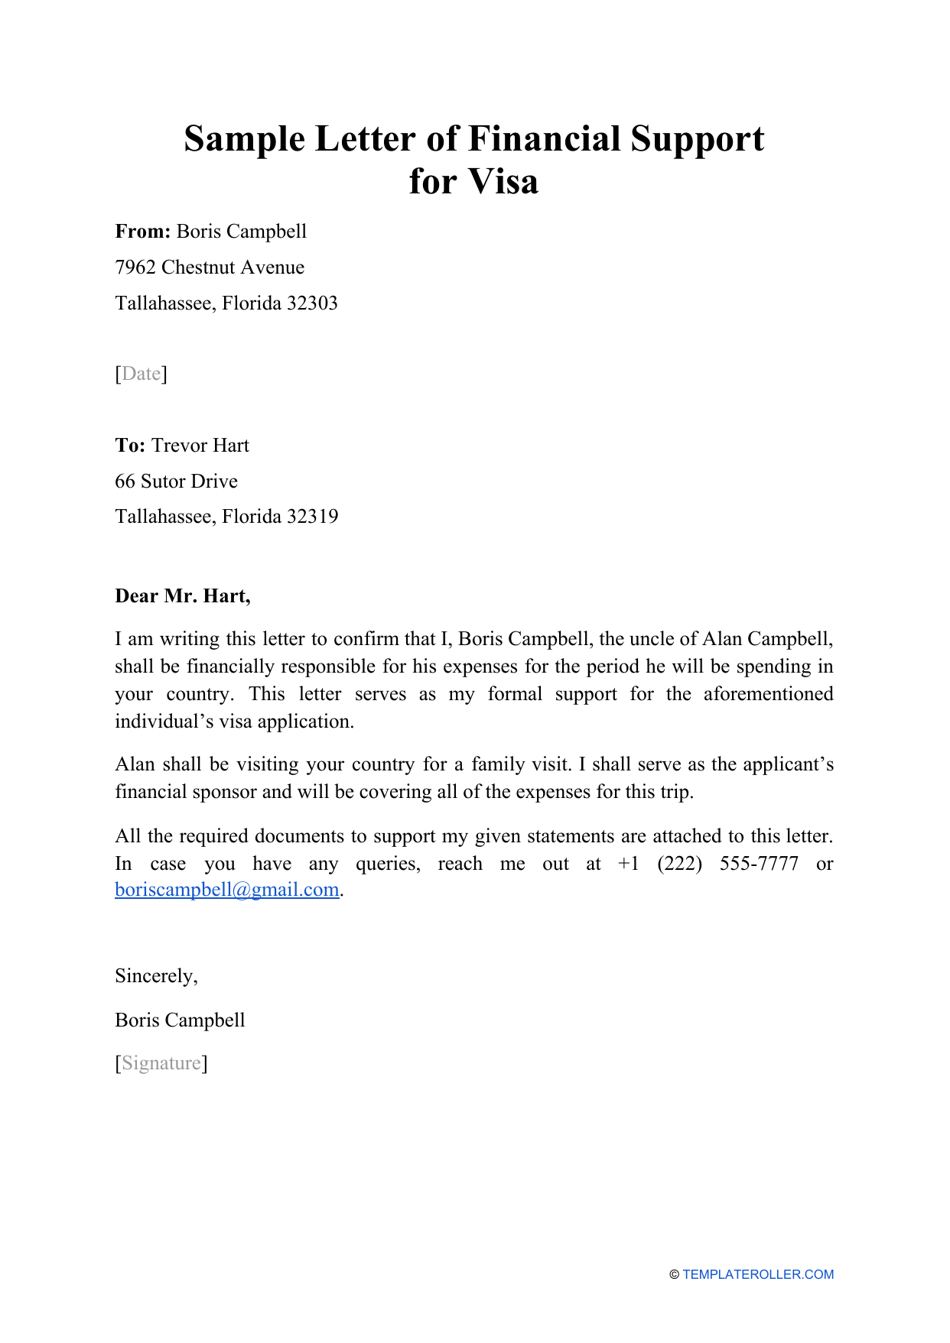 Sample Letter of Financial Support for Visa Download Printable PDF